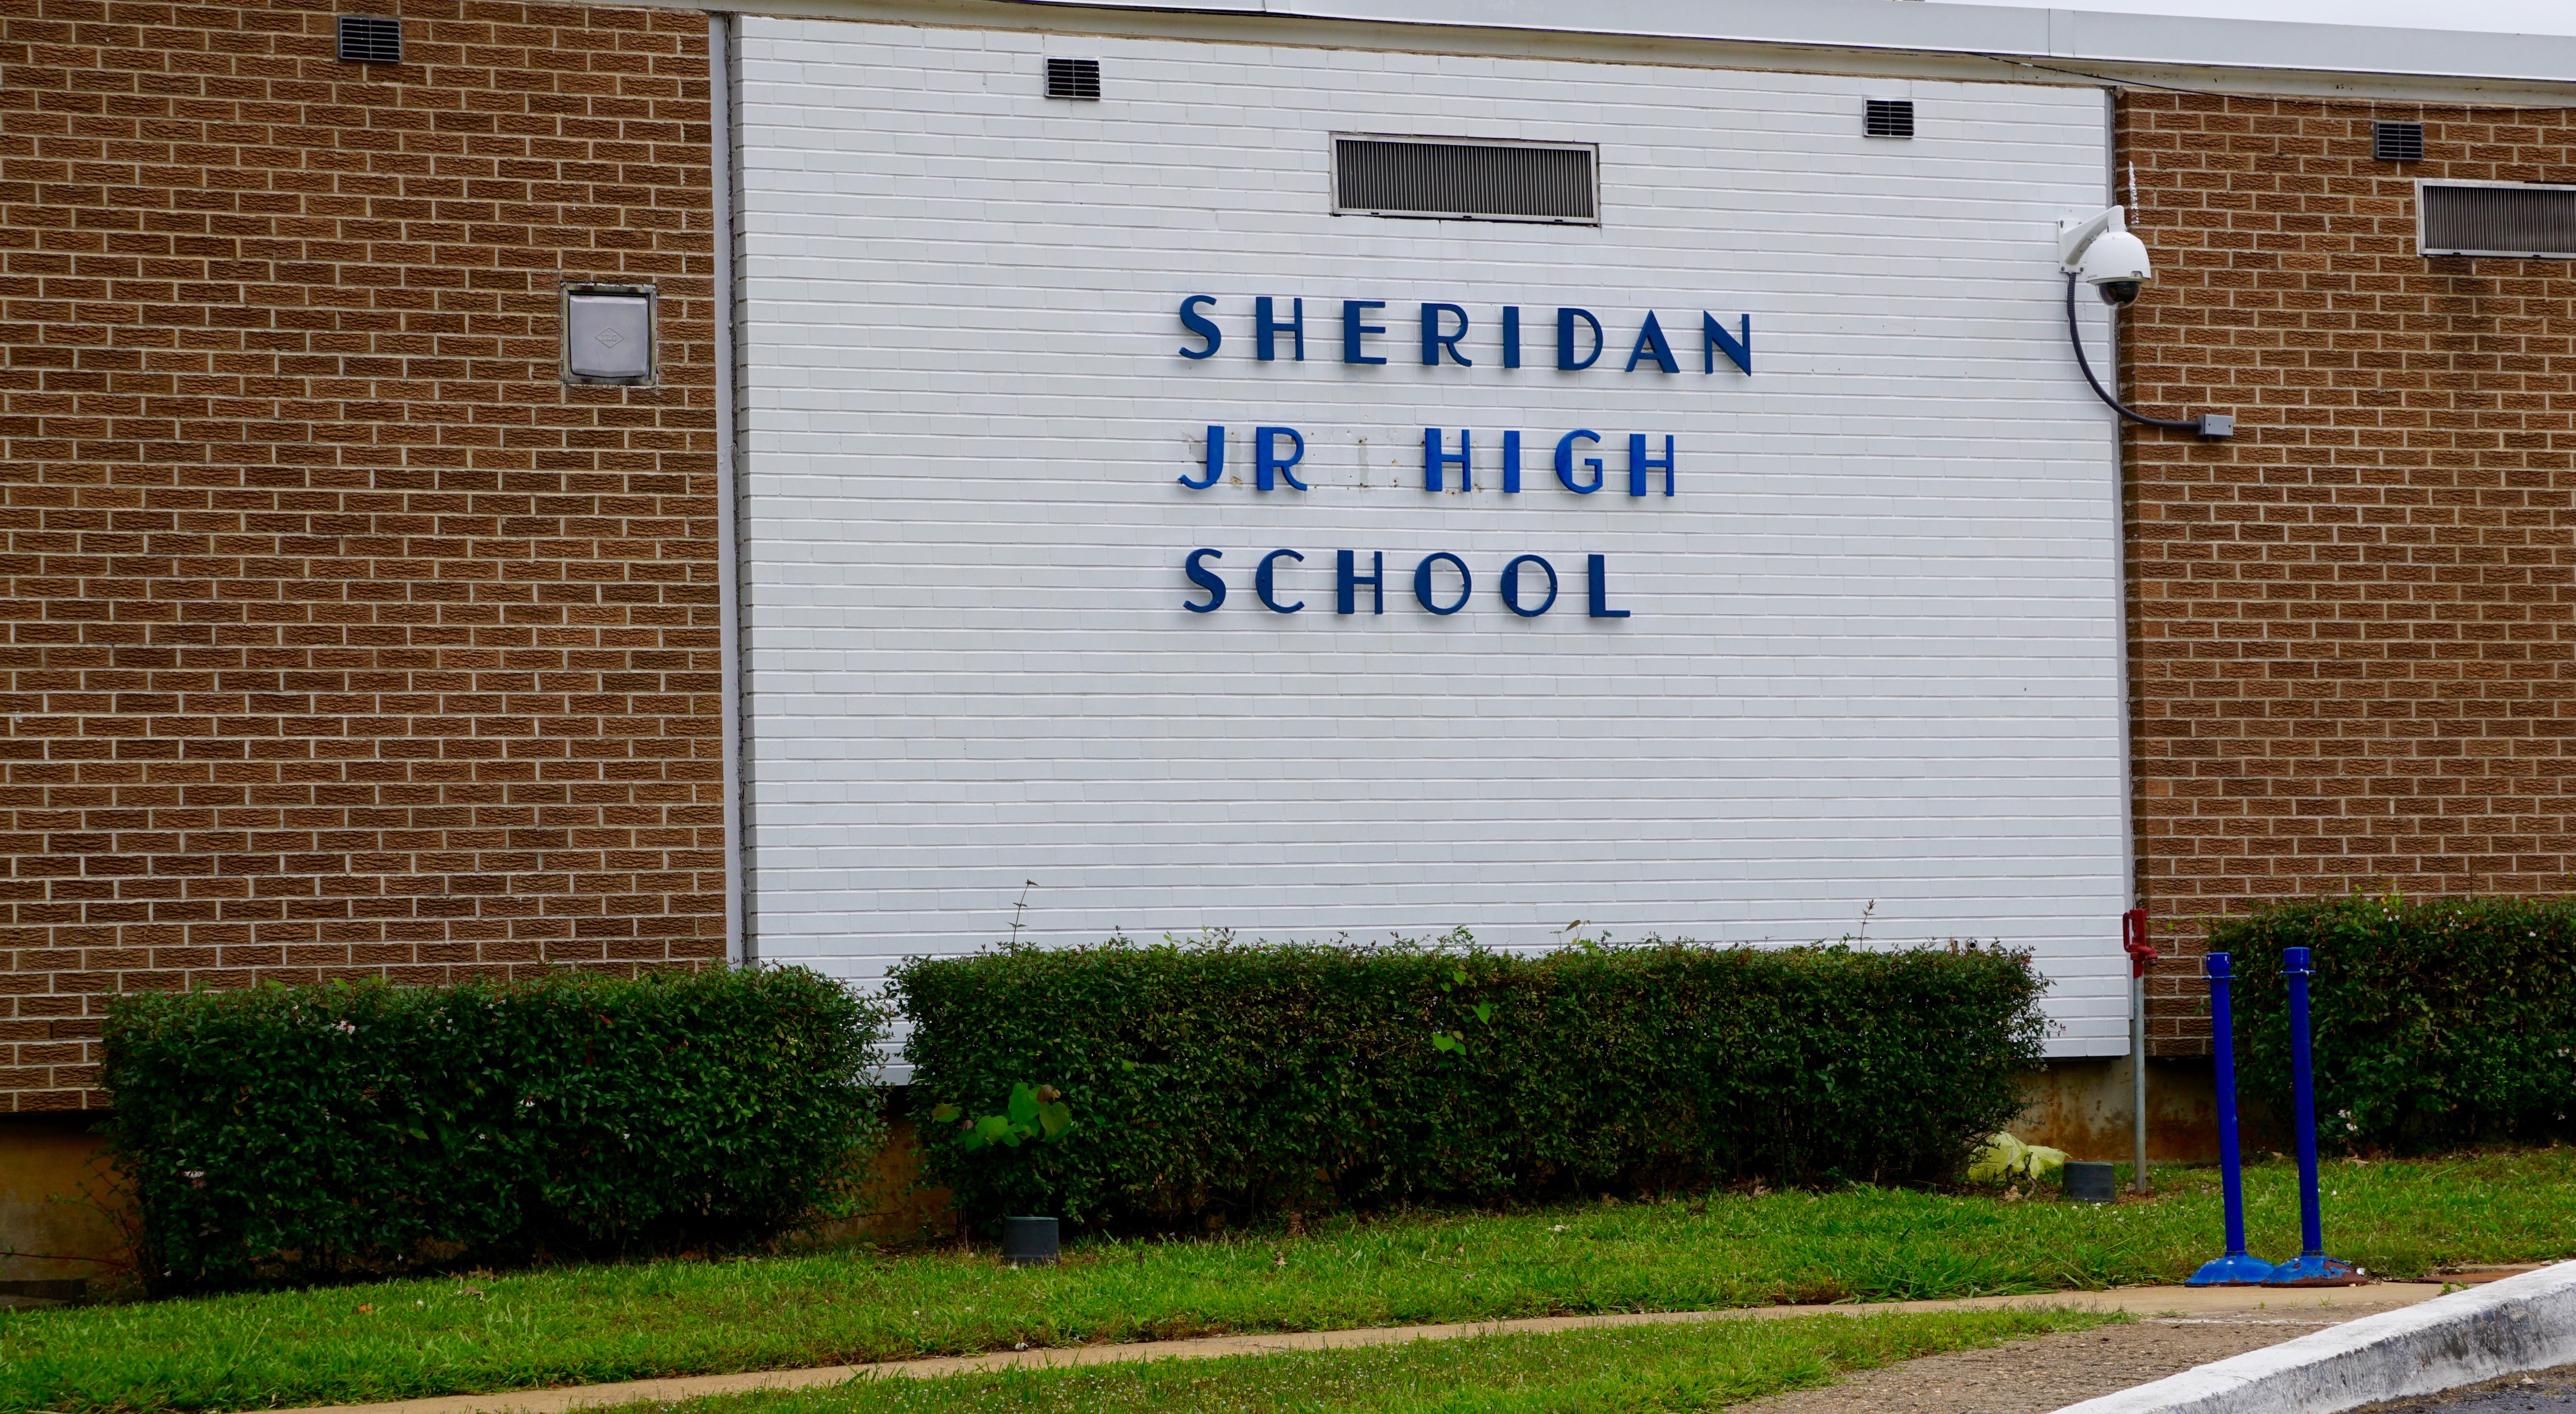 Outside view of Sheridan Jr. High School 